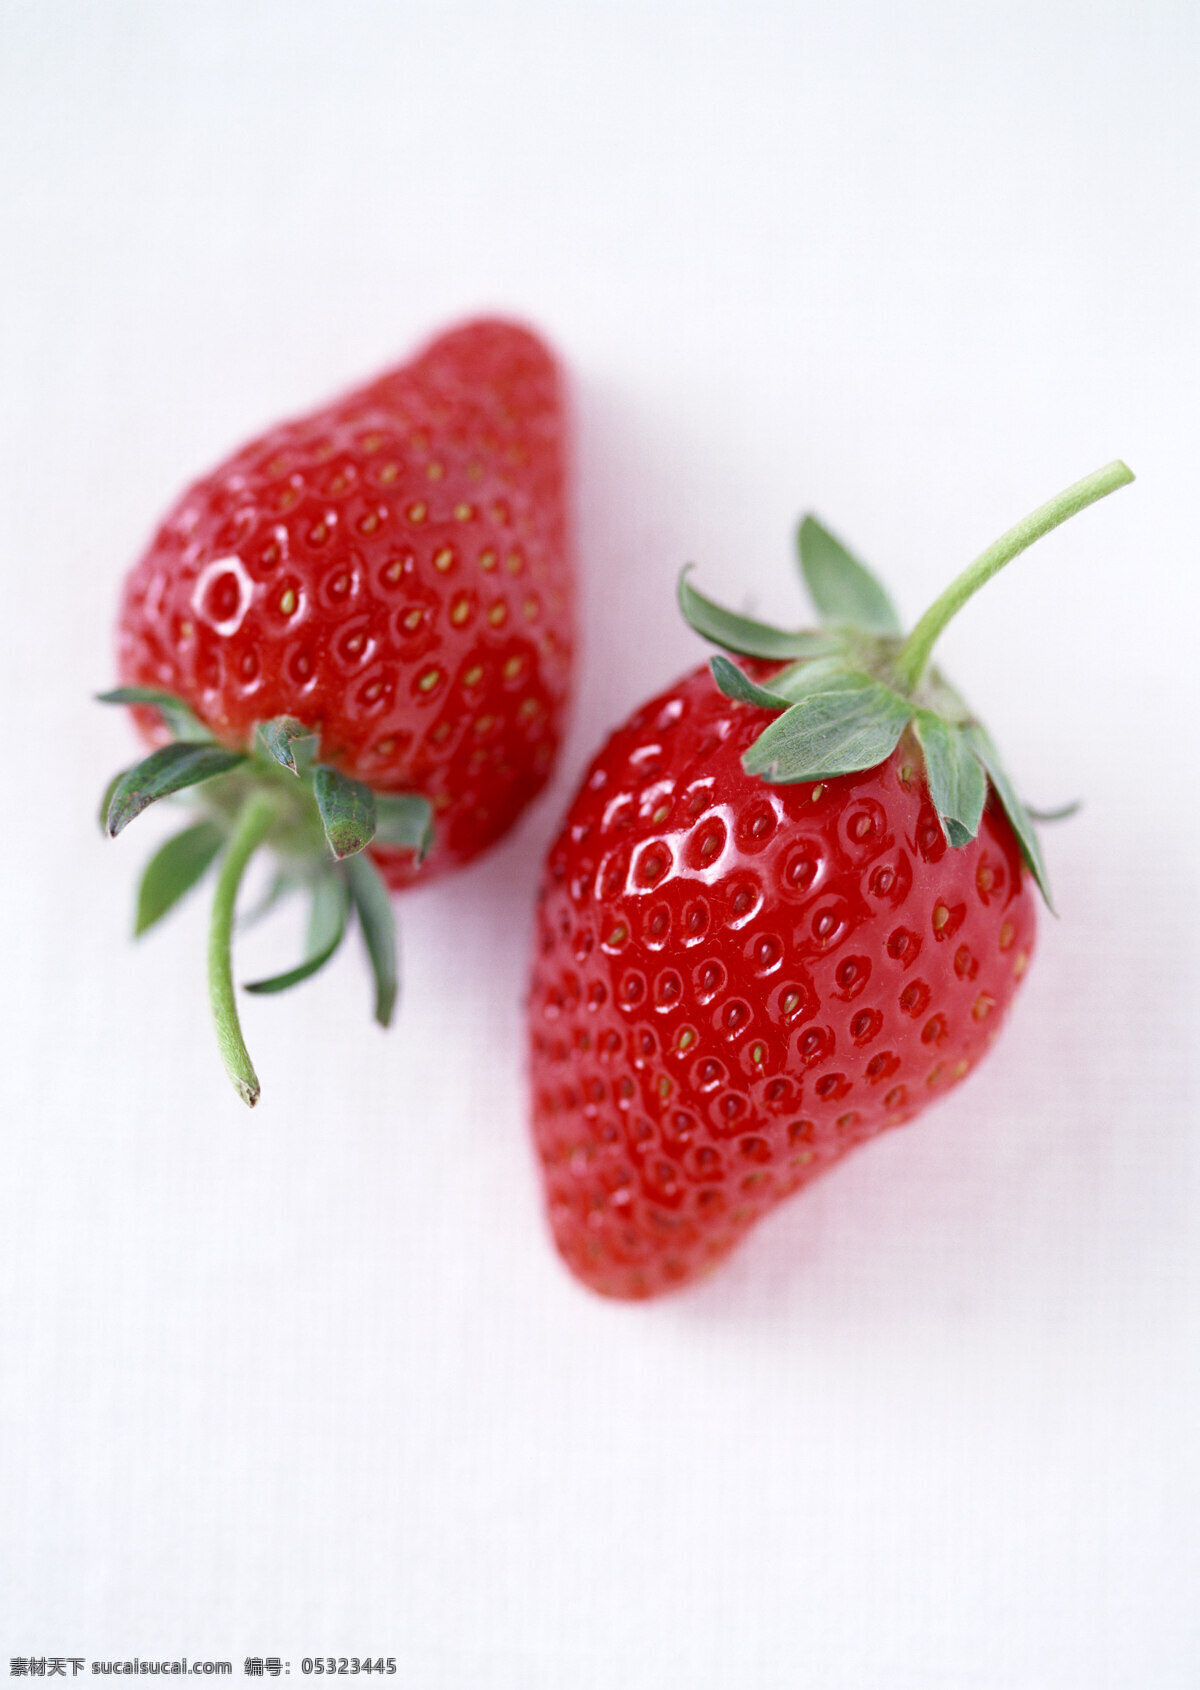 草莓 高清 摄影图 水果 特写 微距 写真 新鲜 高精度图